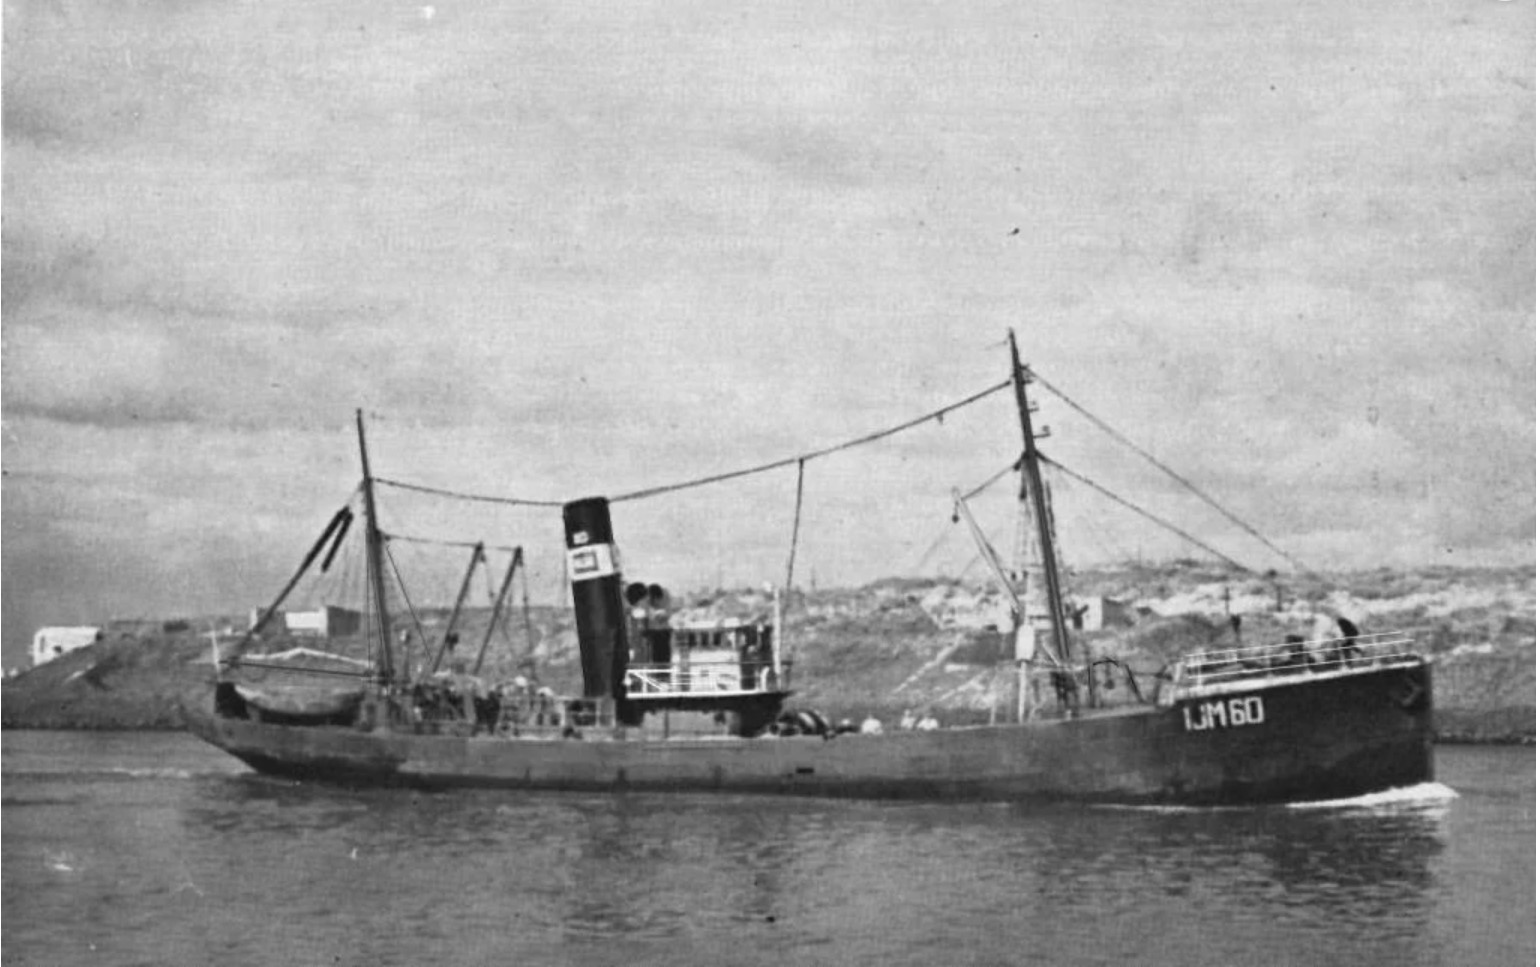 70 jaar geleden verging de stoomtrawler IJM 60 ‘Catharina Duyvis’ met 16 opvarenden door de februari storm.